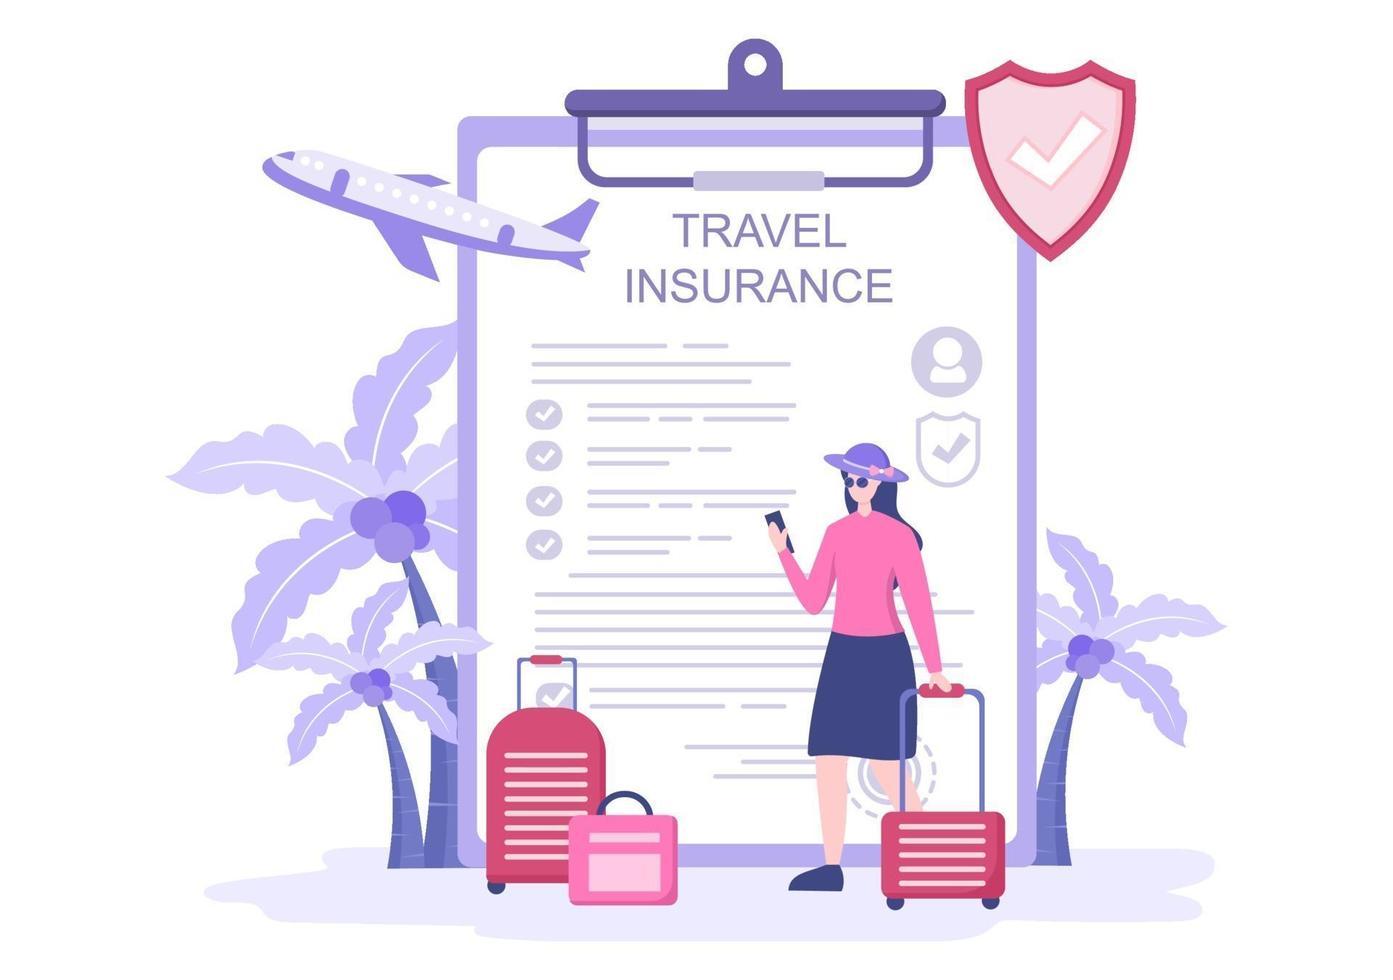 Reise- und Reiseversicherungskonzept für Unfälle, Schutz der Gesundheit, Notfallrisiken im Urlaub. Vektorillustration vektor